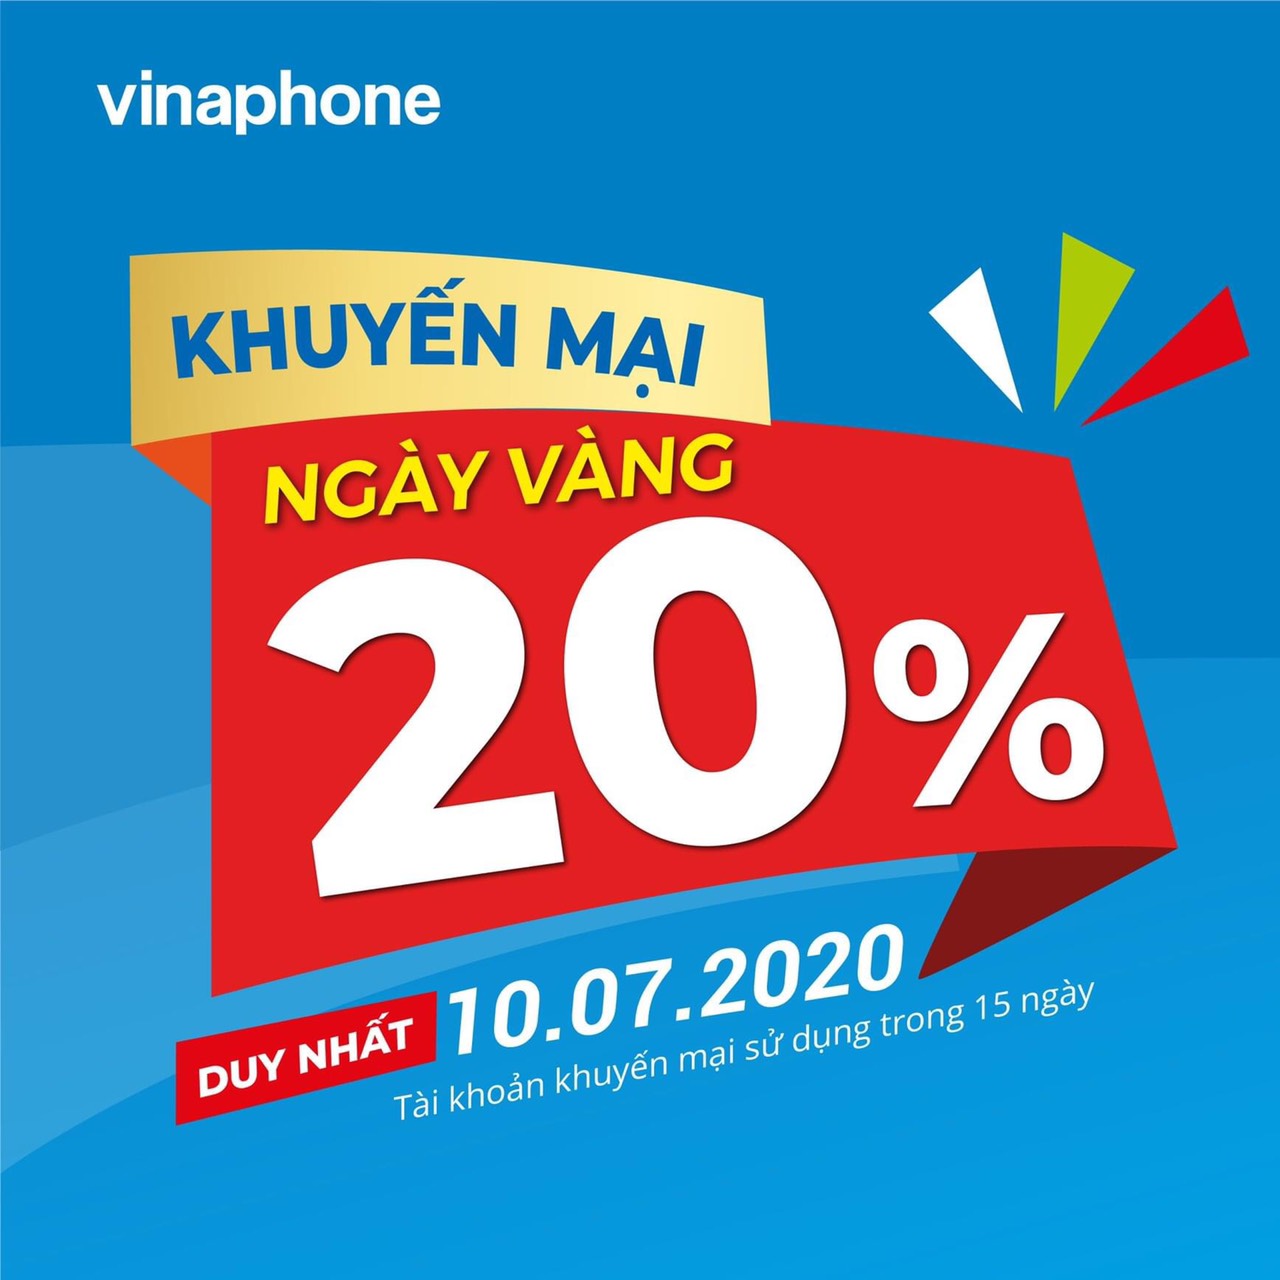 NGÀY VÀNG VINA - NẠP NGAY KẺO LỠ!!! ‼️ Duy nhất trong ngày 10/07/2020, VinaPhone 